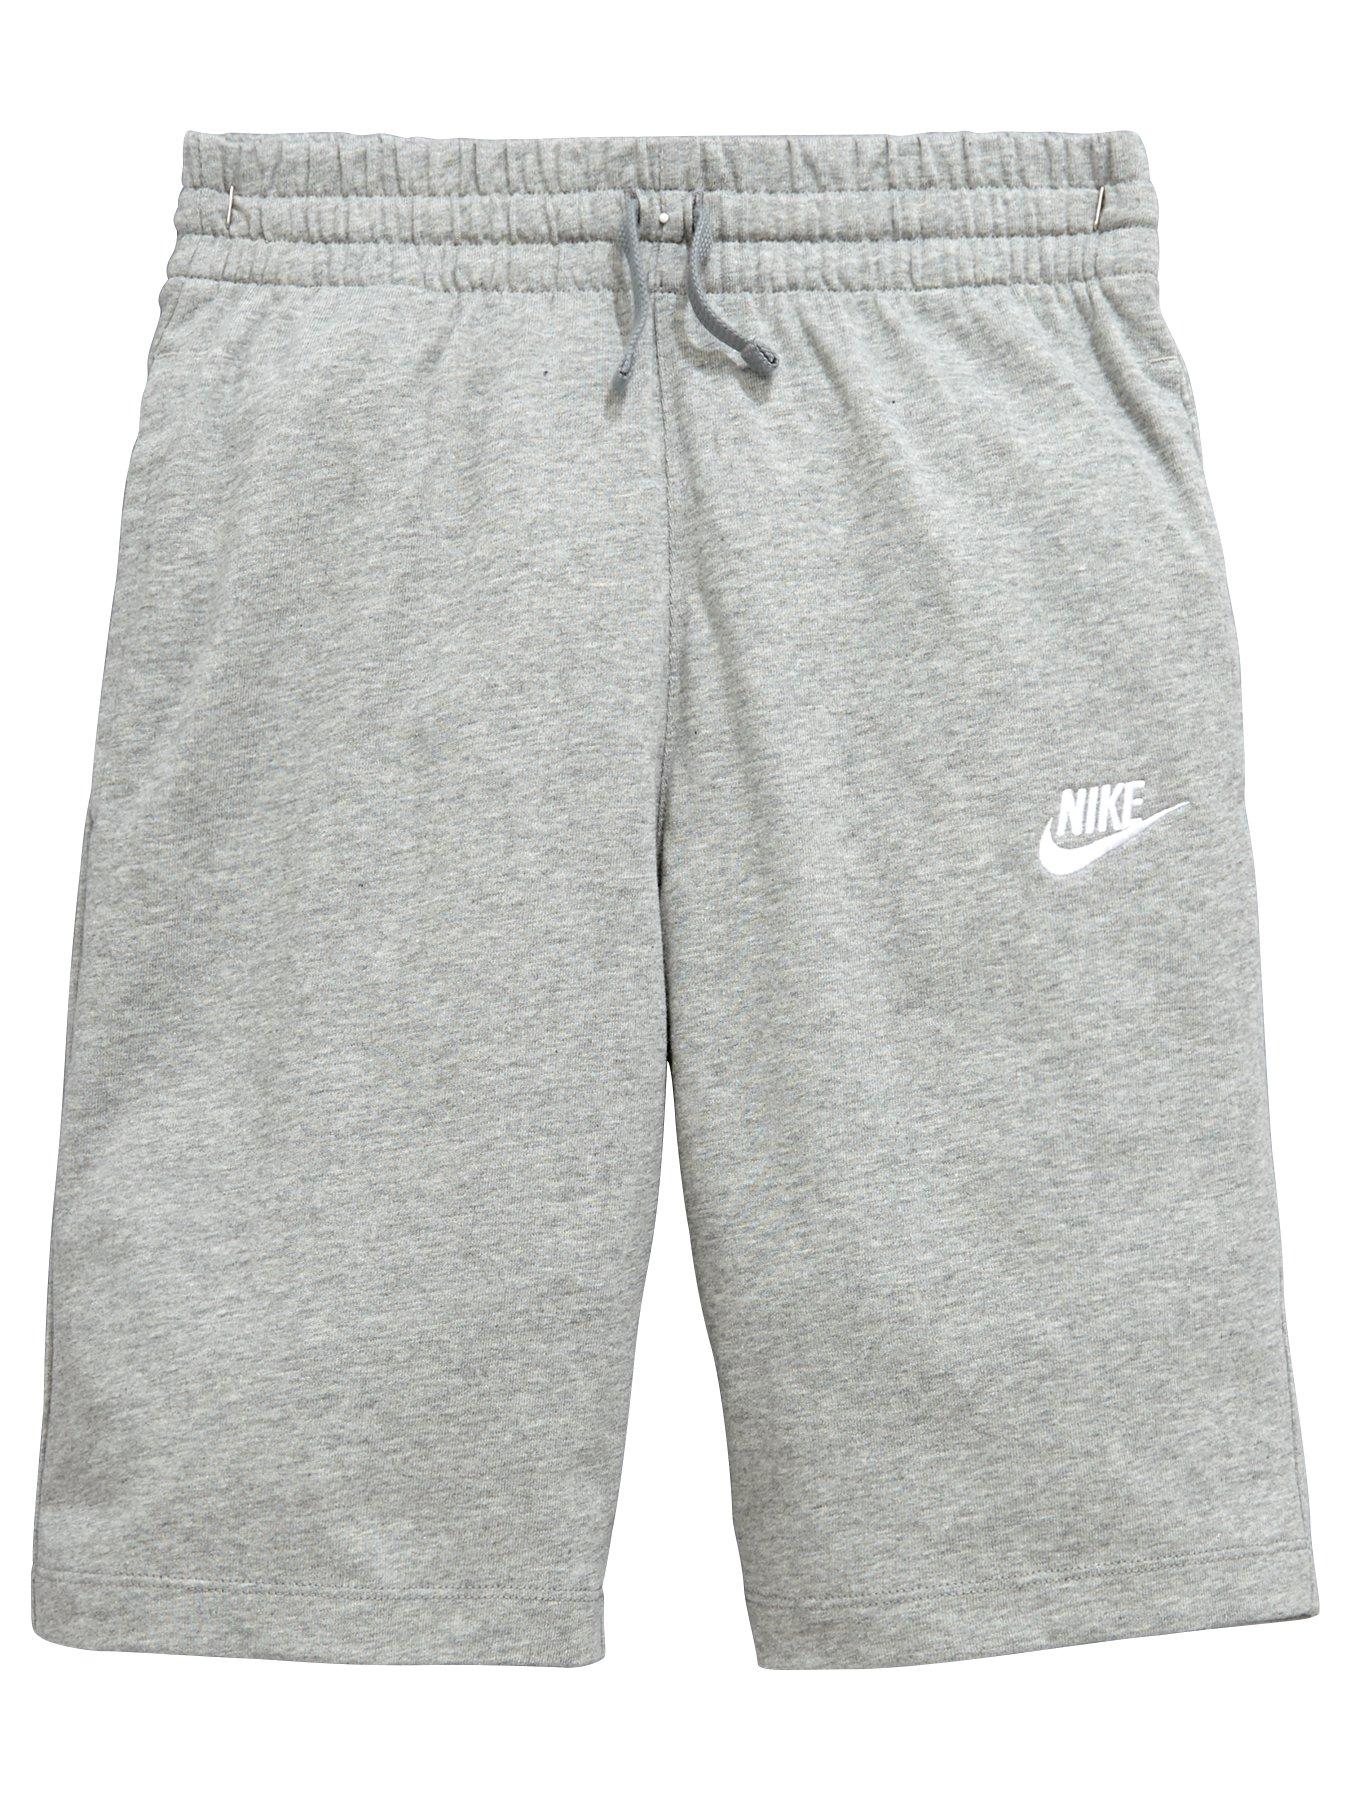 grey nike shorts kids